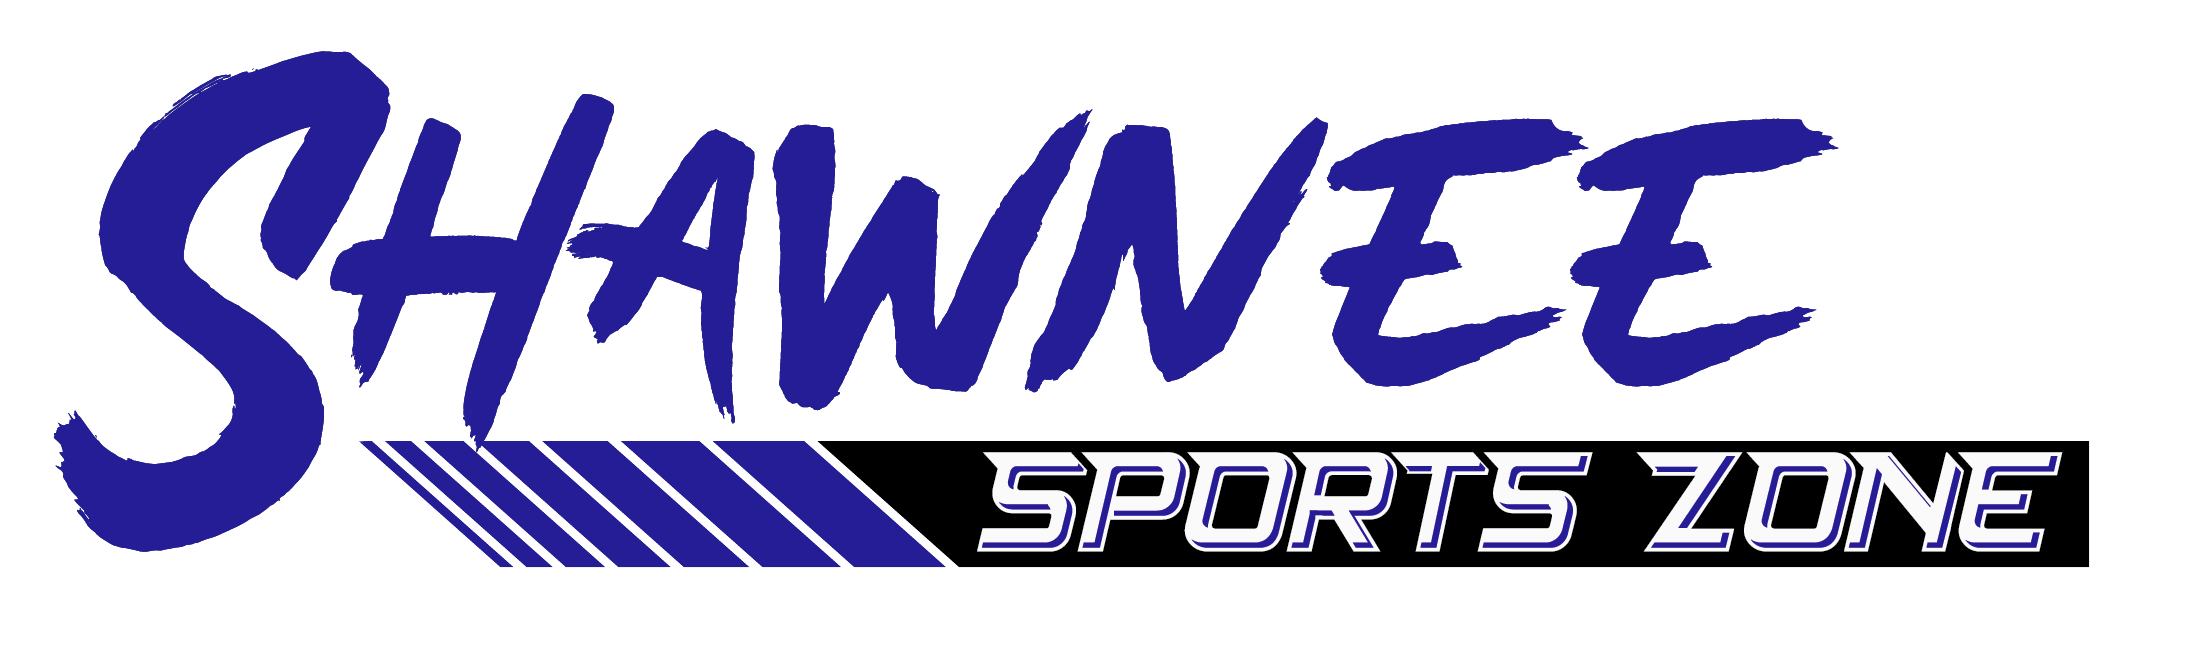 Shawnee Sports Zone